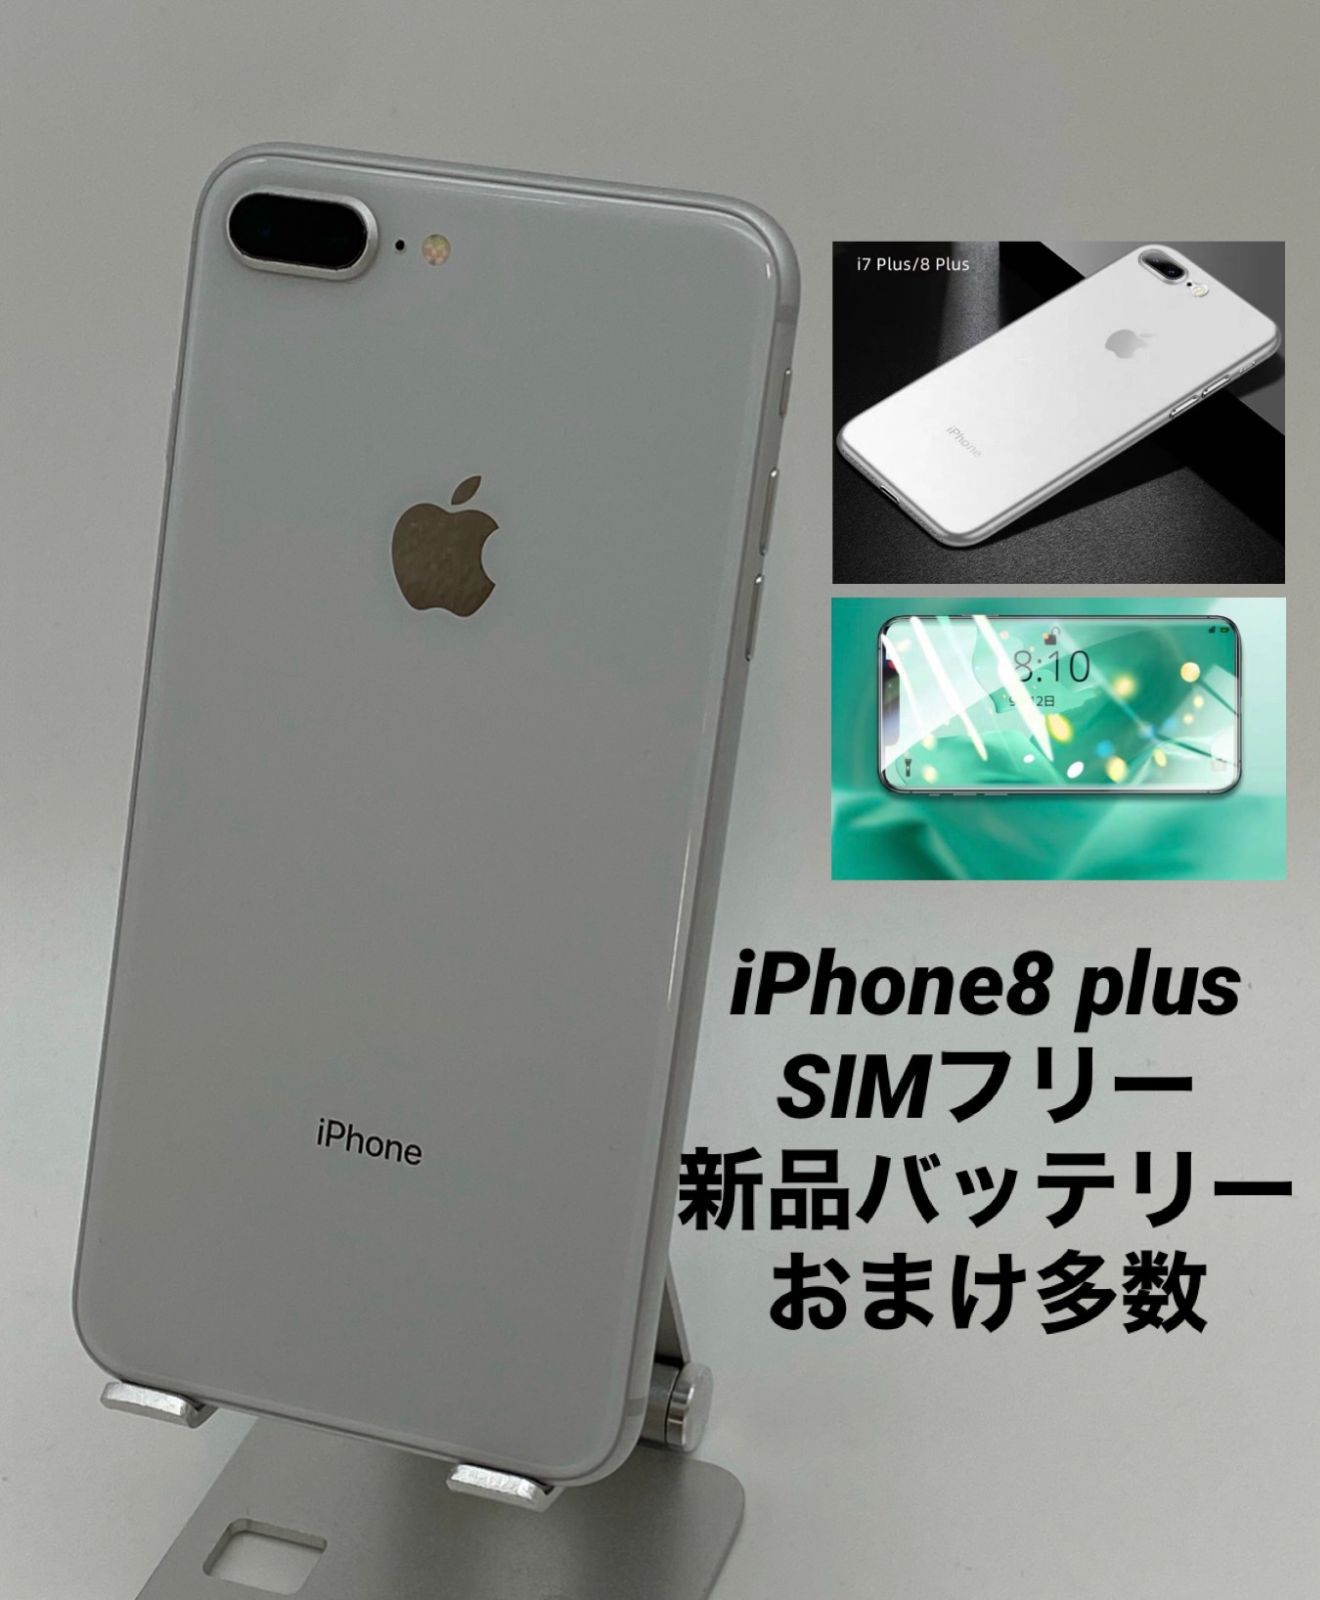 ☆美品☆iPhone8 Plus 64GB シルバー/シムフリー/大容量3400mAh新品